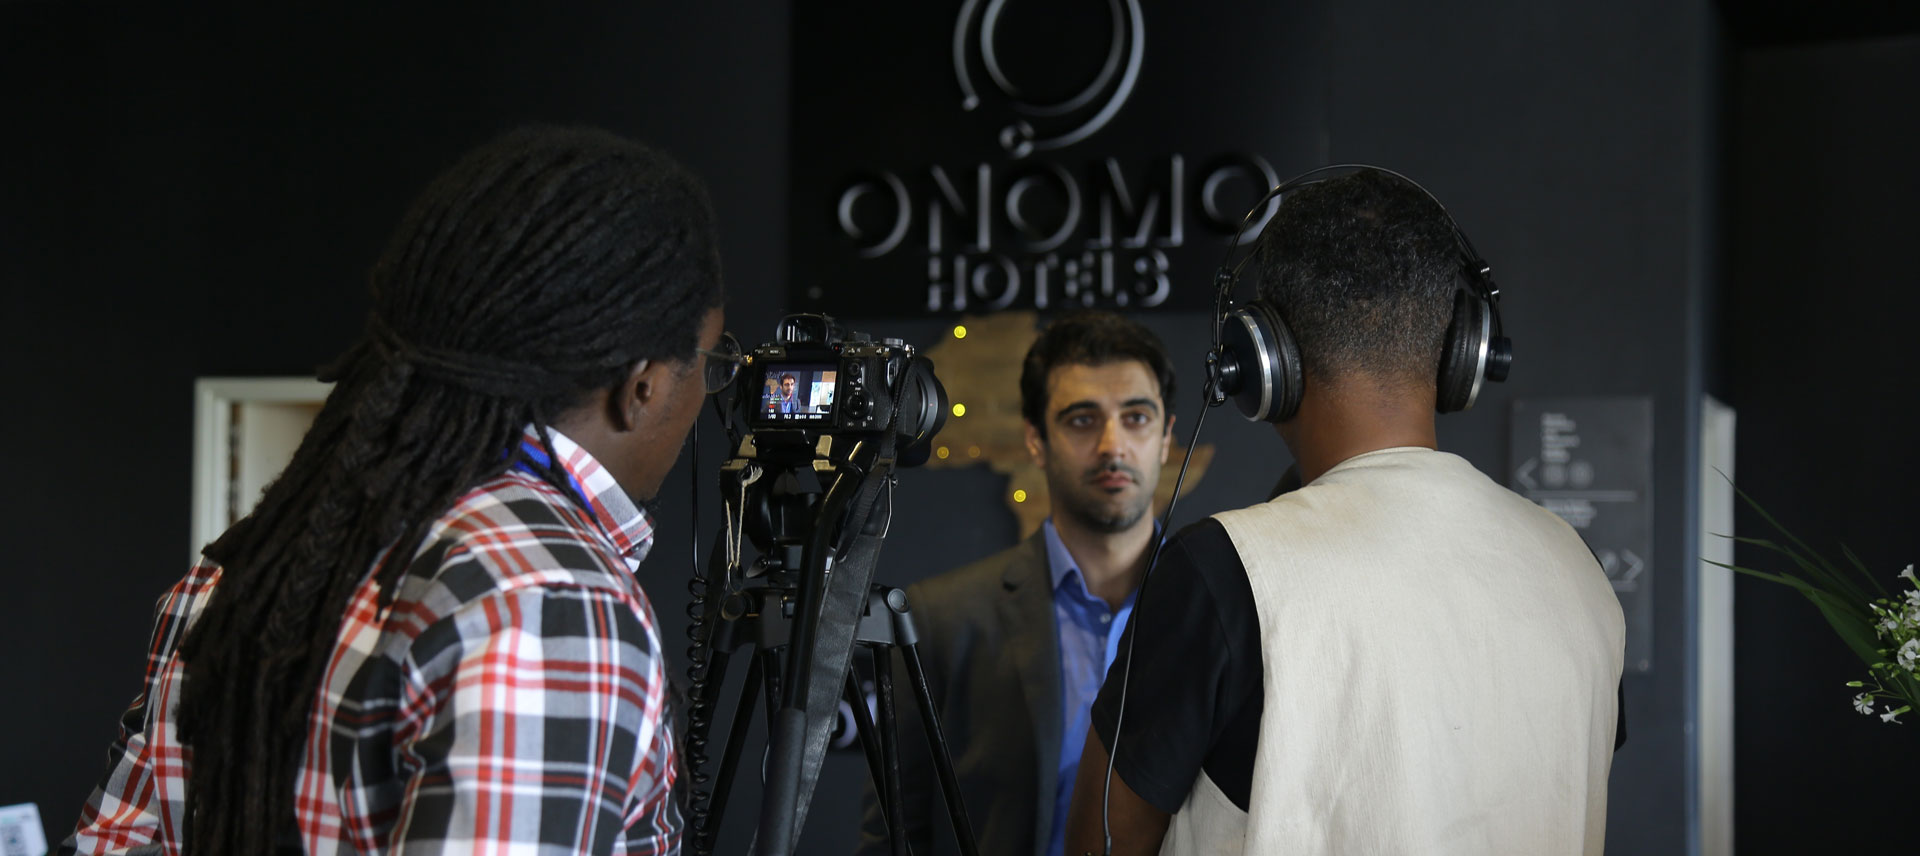 تصوير هايلايت فيديو فعالية بفندق اونومو كيغالي